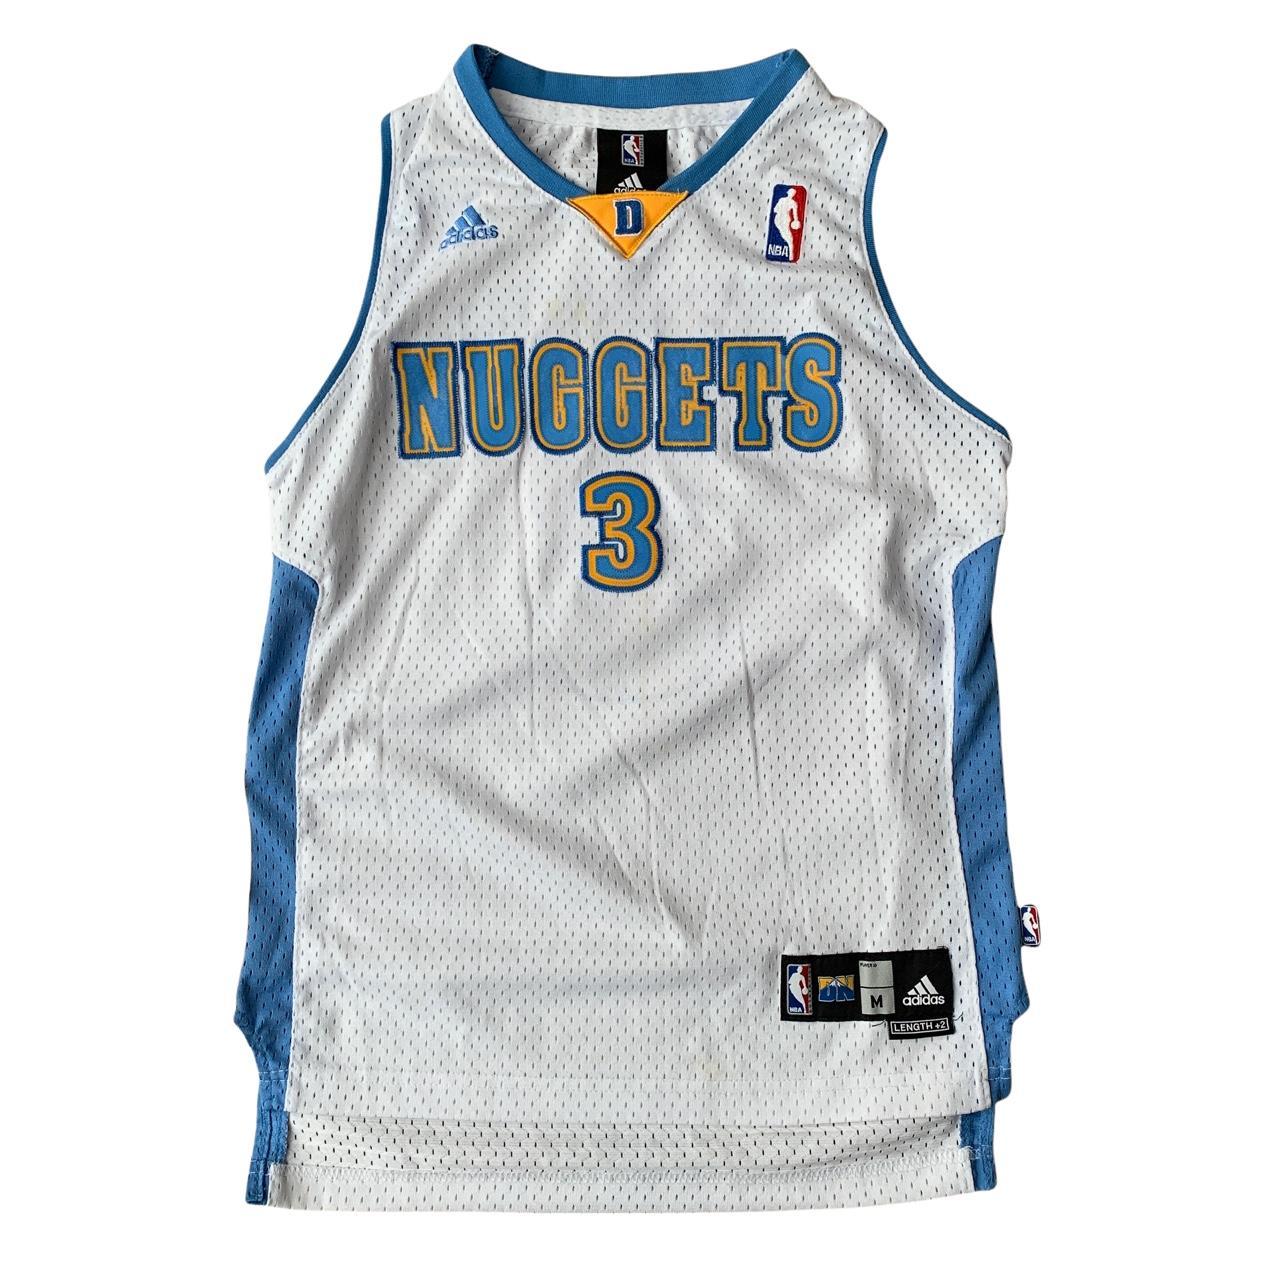 Denver Nuggets NBA Basketball Jersey #3 Iverson - Depop